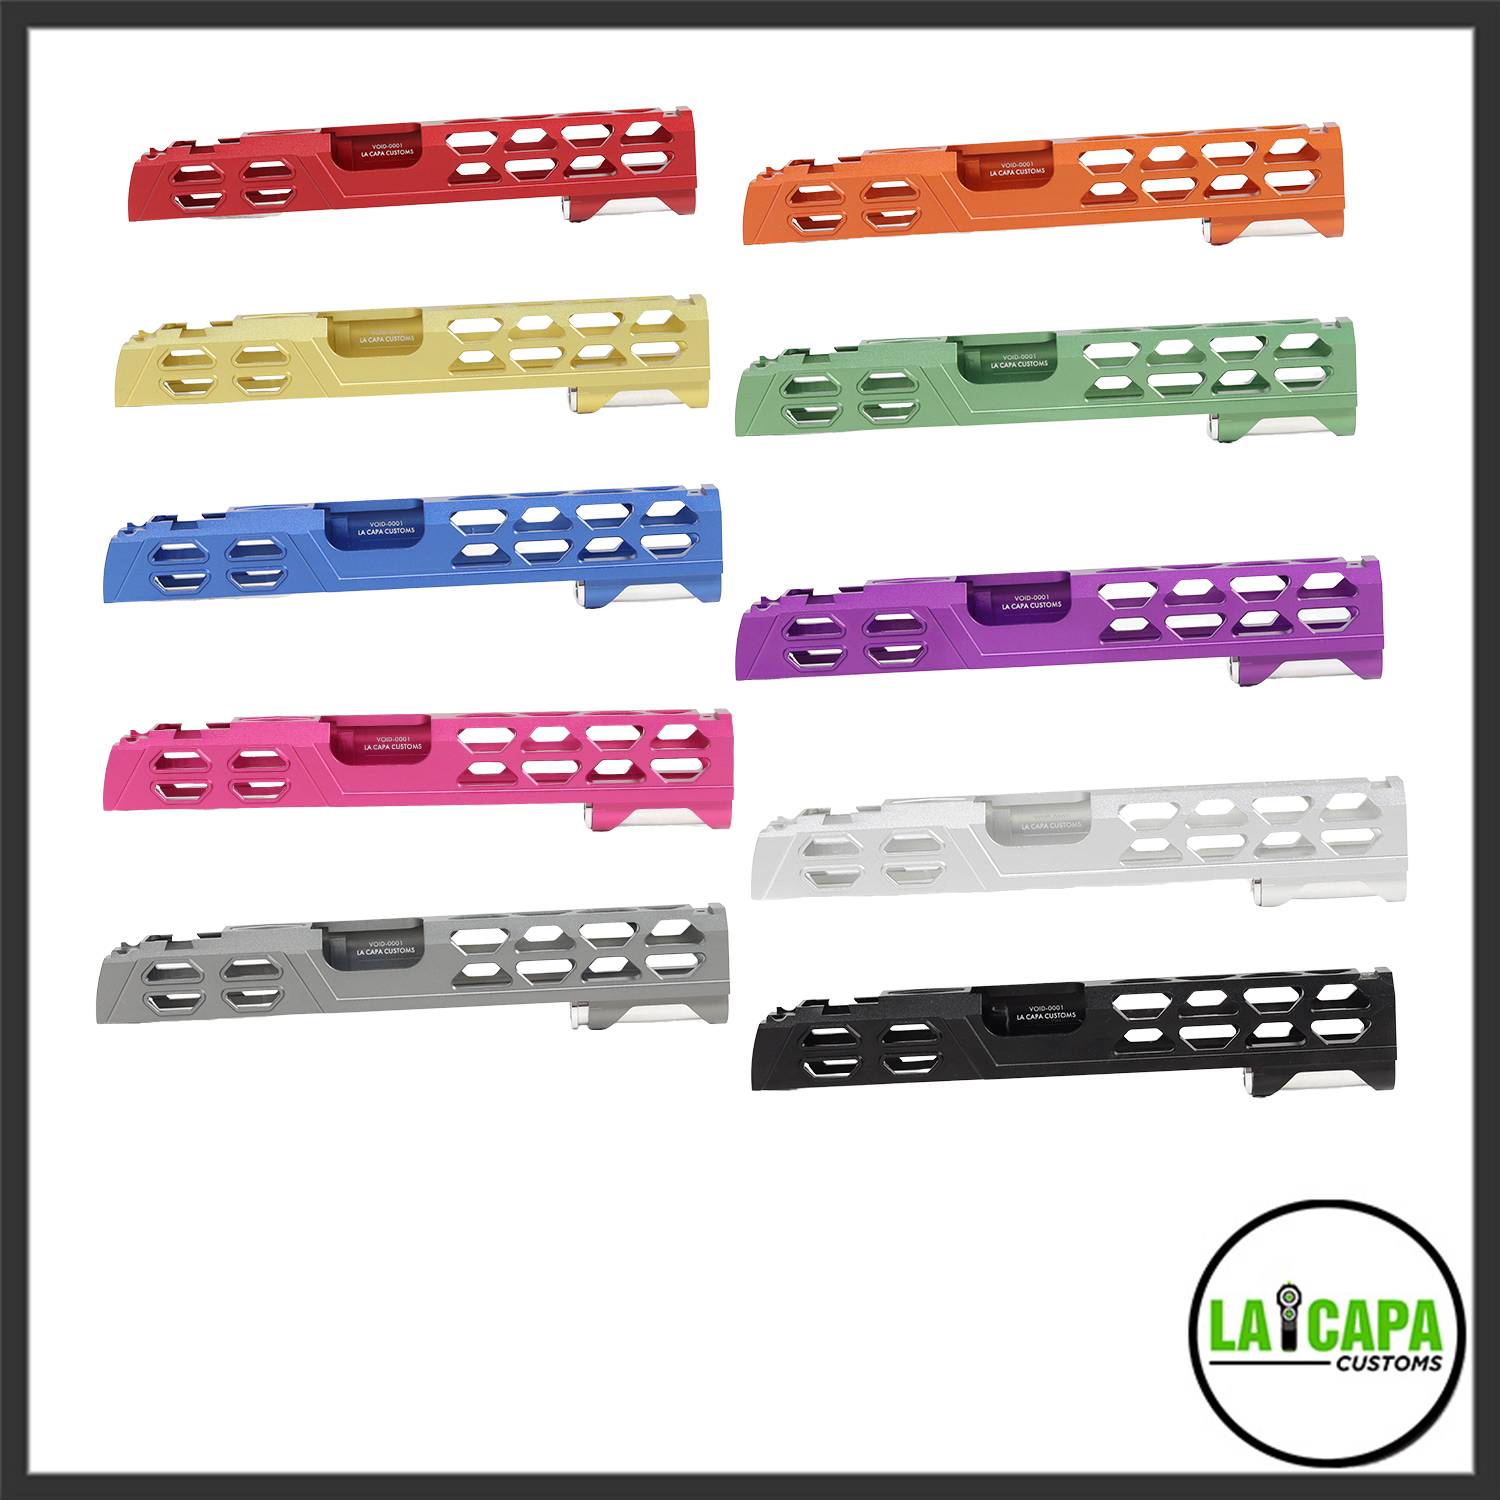 LA Capa Customs 5.1 “VOID” Aluminum Slide

- Orange